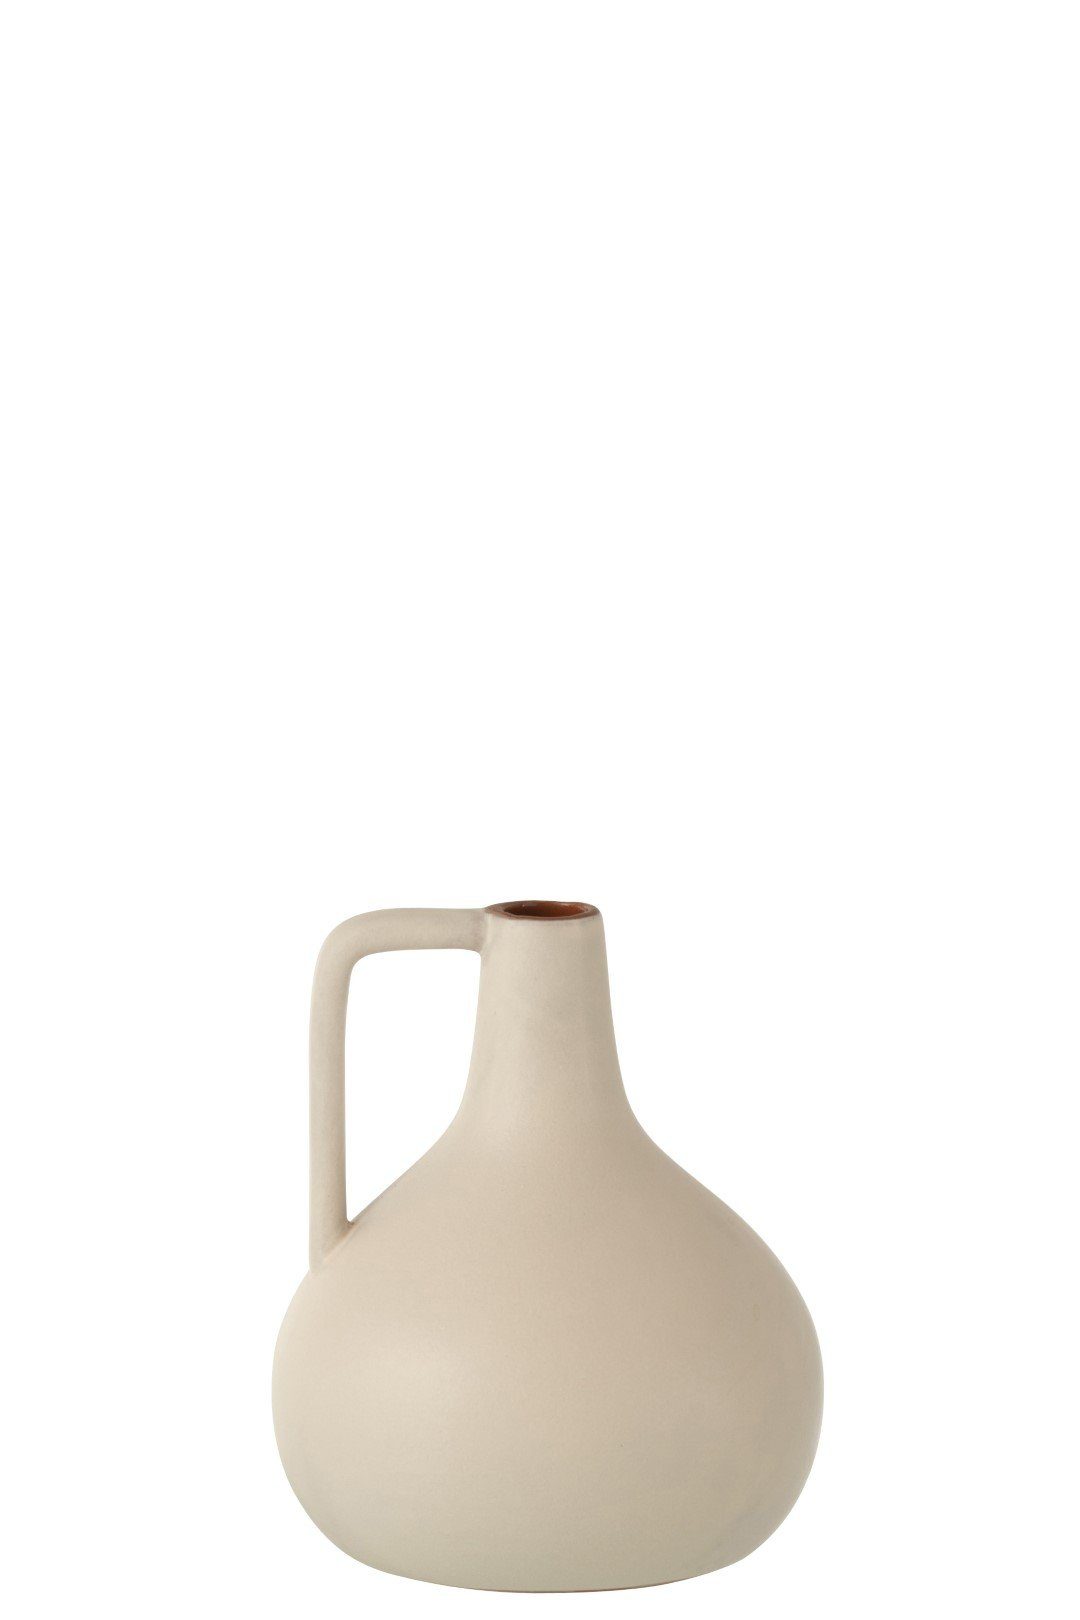 J-line Dekovase Skandi Vase, Dekovase Nordic Terrakotta beige-rose matt, klein, Tischvase, Dekoration